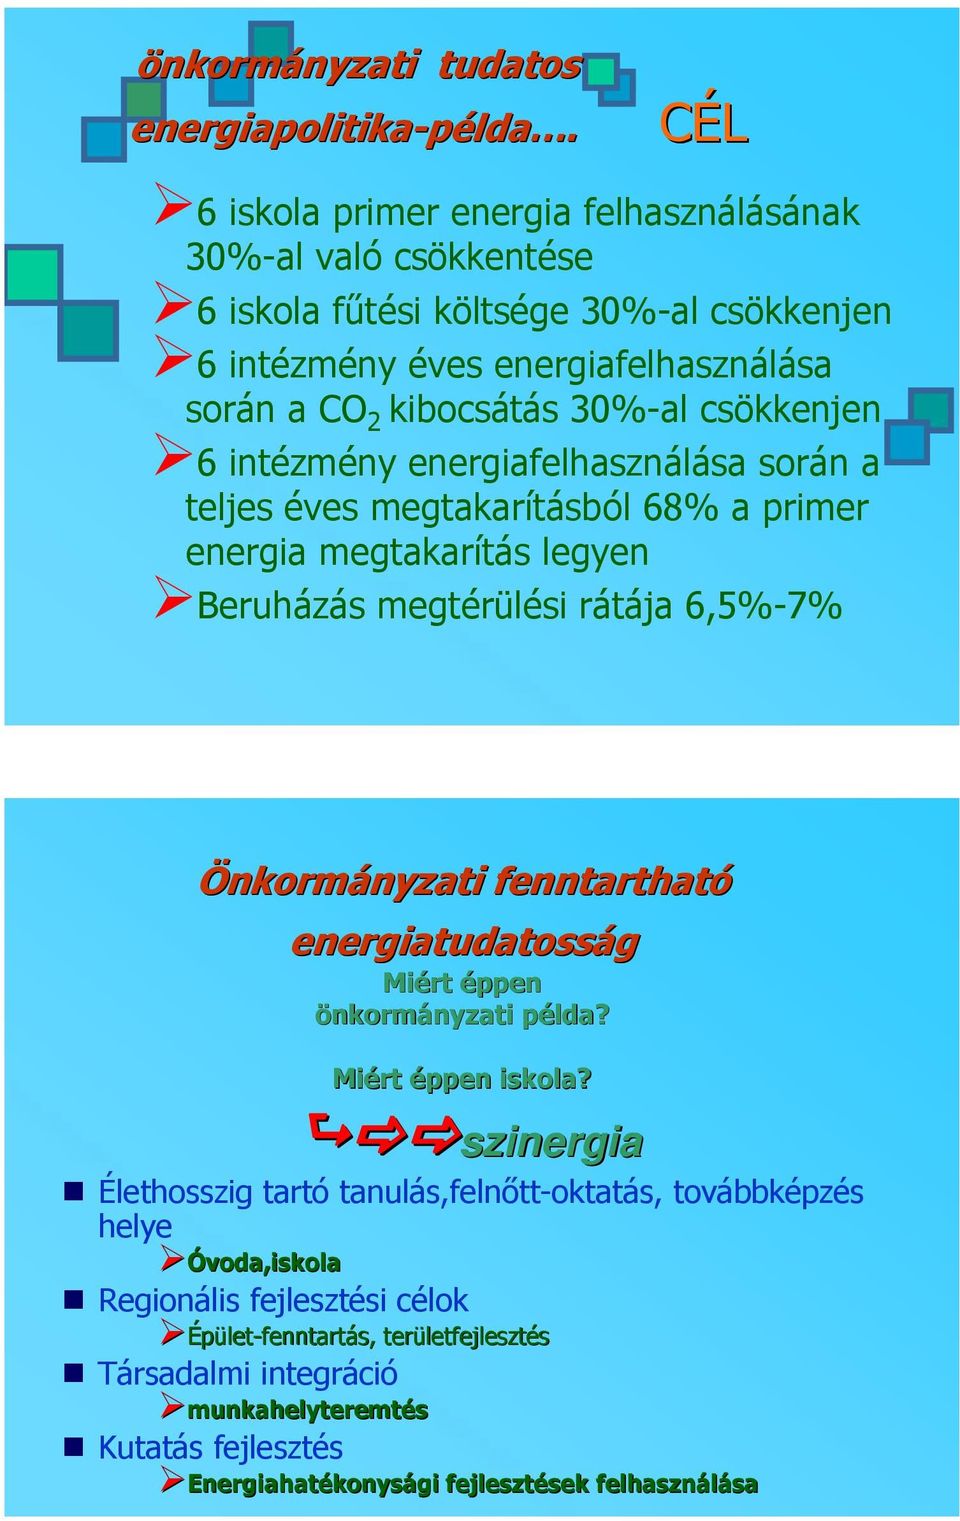 intézmény energiafelhasználása során a teljes éves megtakarításból 68% a primer energia megtakarítás legyen Beruházás megtérülési rátája 6,5%-7% Önkormányzati nyzati fenntartható